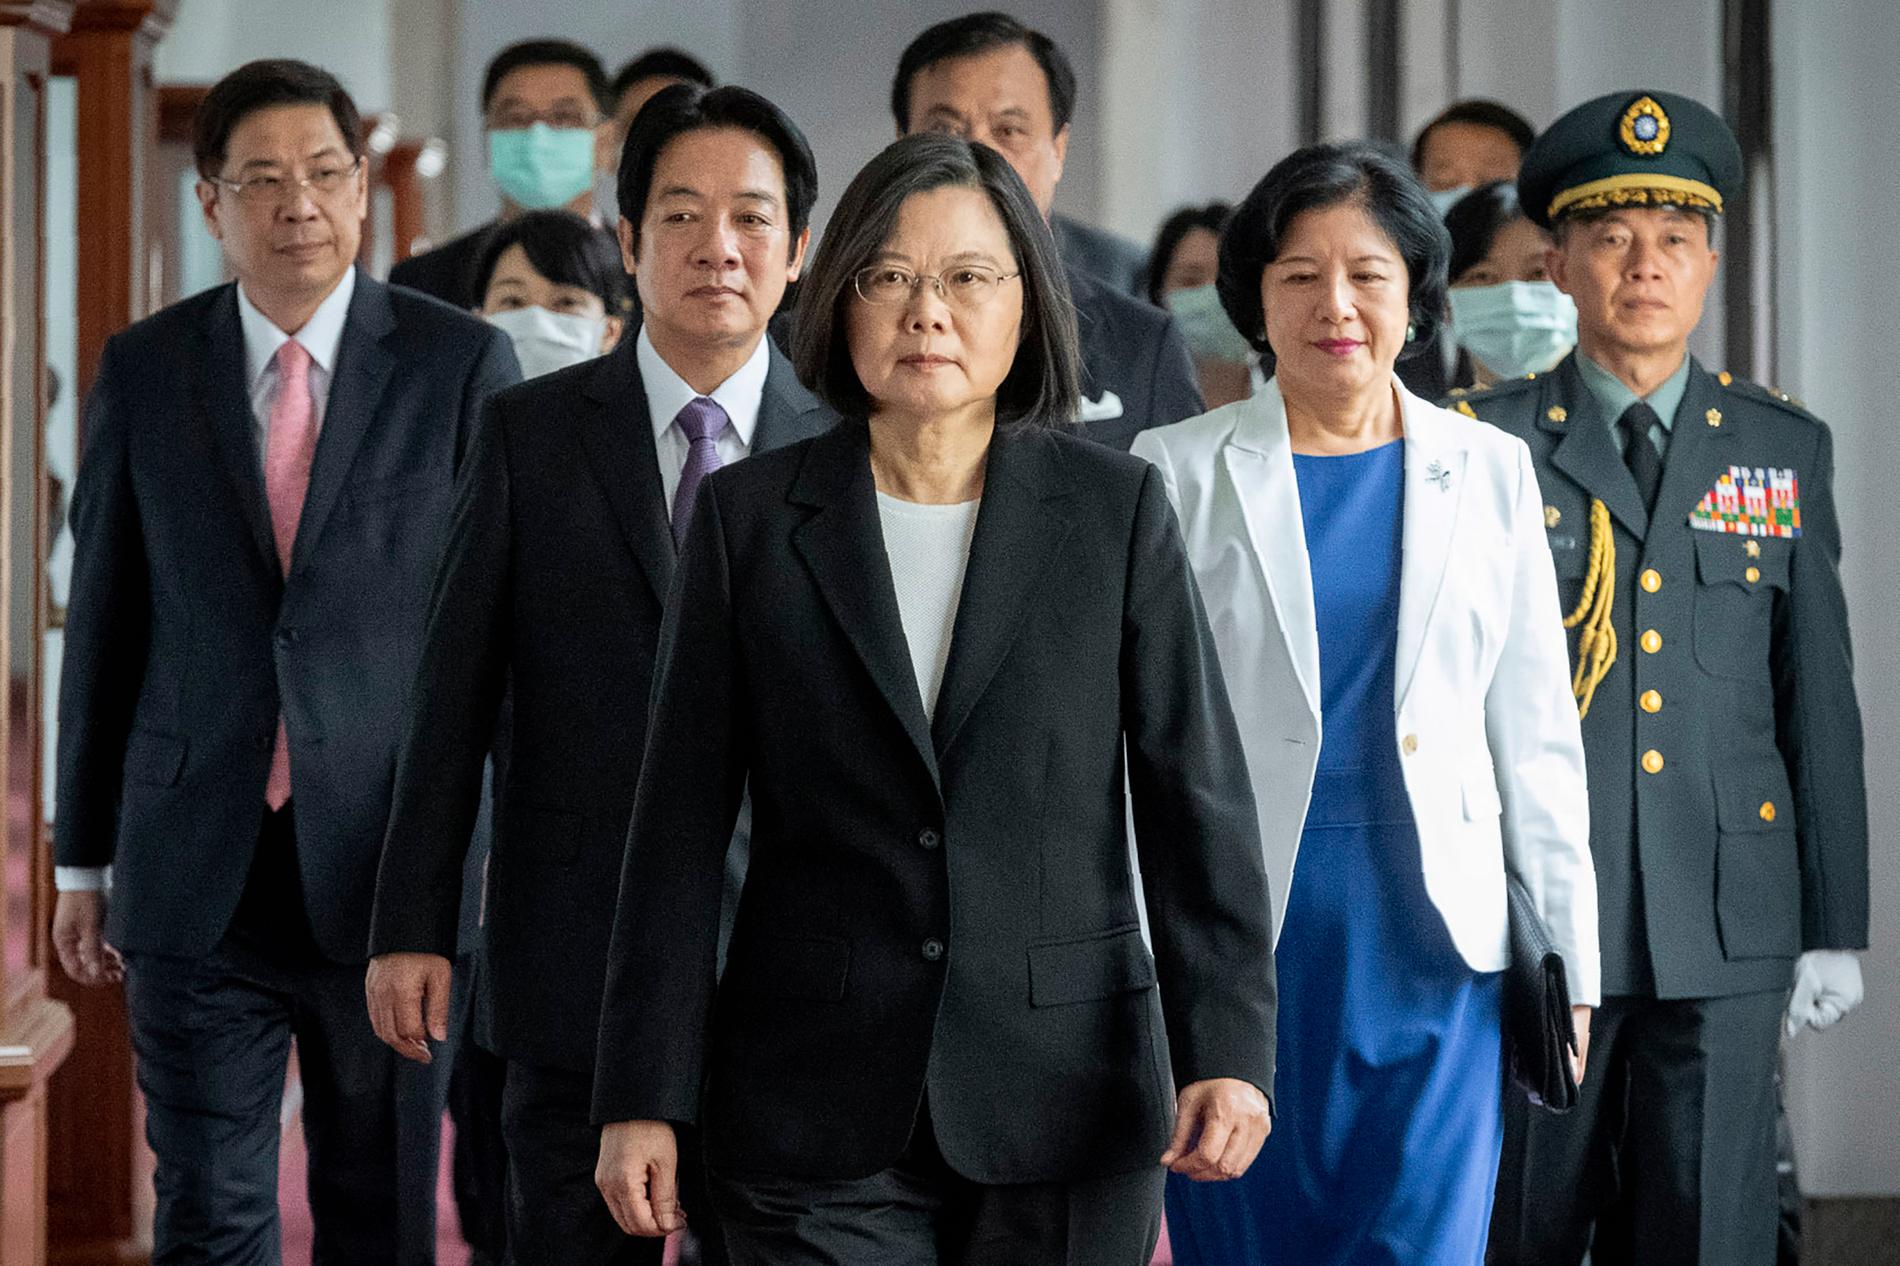 Taiwans president Tsai Ing-wen tillträdde sin andra mandatperiod i våras, samtidigt som pressen från Fastlandskina på vad Peking anser är en utbrytarregion ökade. Tsai Ing-wen är Pekingkritisk, liksom många taiwaneser.